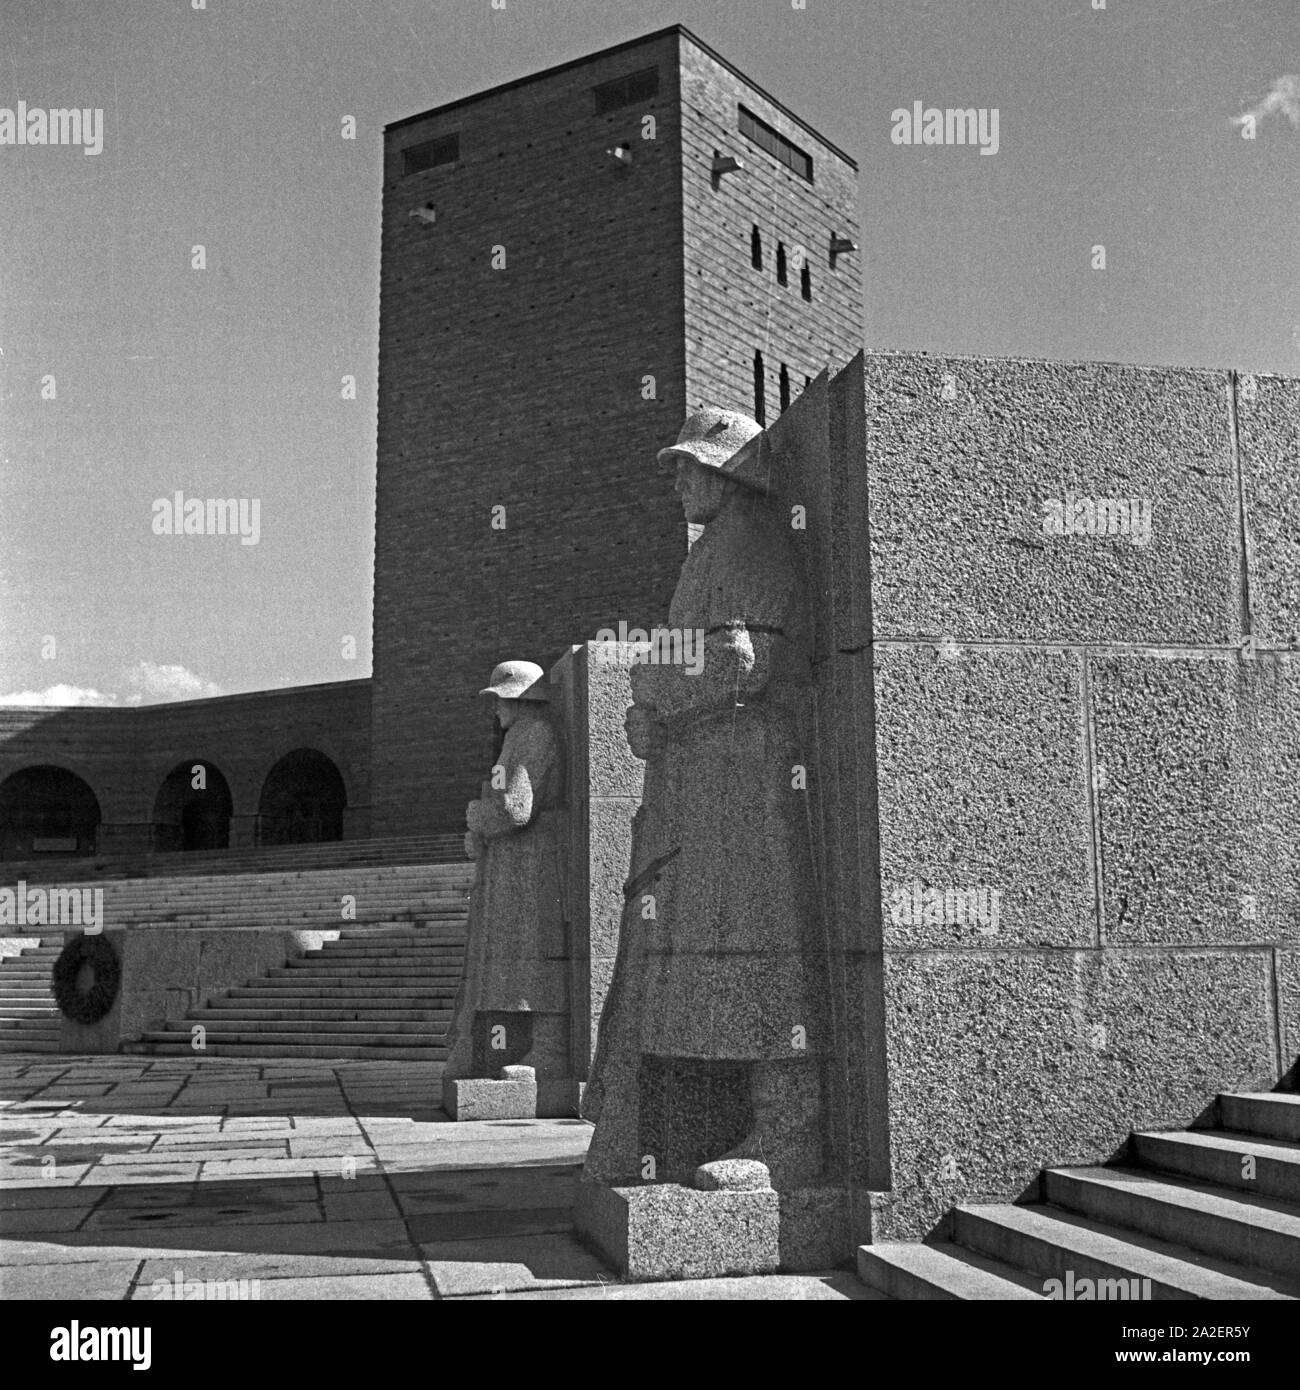 Innenhof im Tannenberg in Ostpreußen Denkmal bei Hohenstein, Deutschland 1930er Jahre. Innenhof am Tannenberg Monument in der Nähe von hohenstein in Ostpreußen, Deutschland 1930. Stockfoto